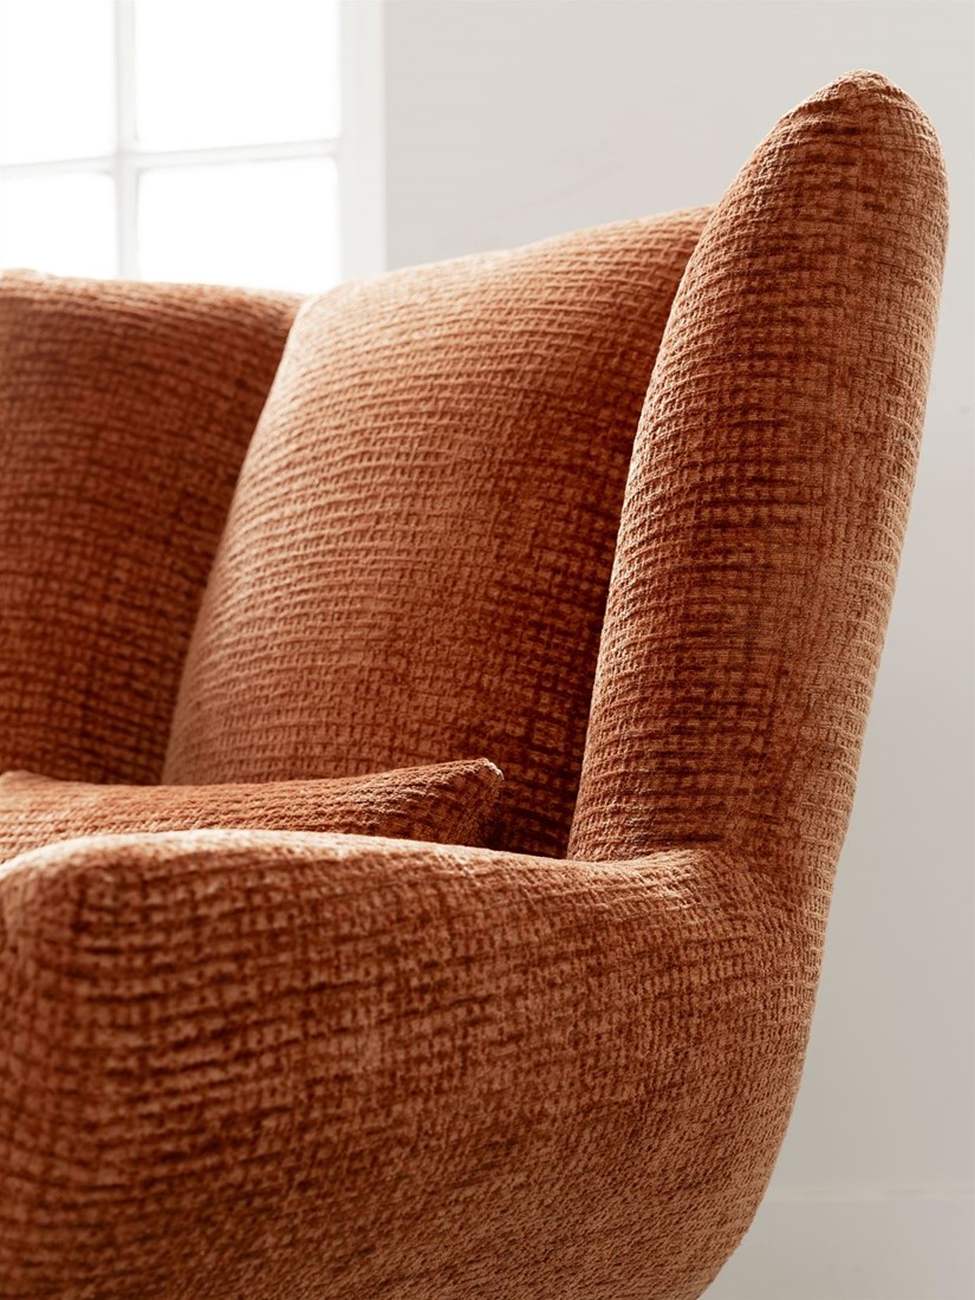 Der Sessel Astro überzeugt mit seinem modernen Design. Gefertigt wurde er aus Stoff, welcher einen braunen Farbton besitzt. Das Gestell ist aus Metall und hat eine schwarze Farbe. Der Sessel besitzt eine Größe von 97x92x96 cm.